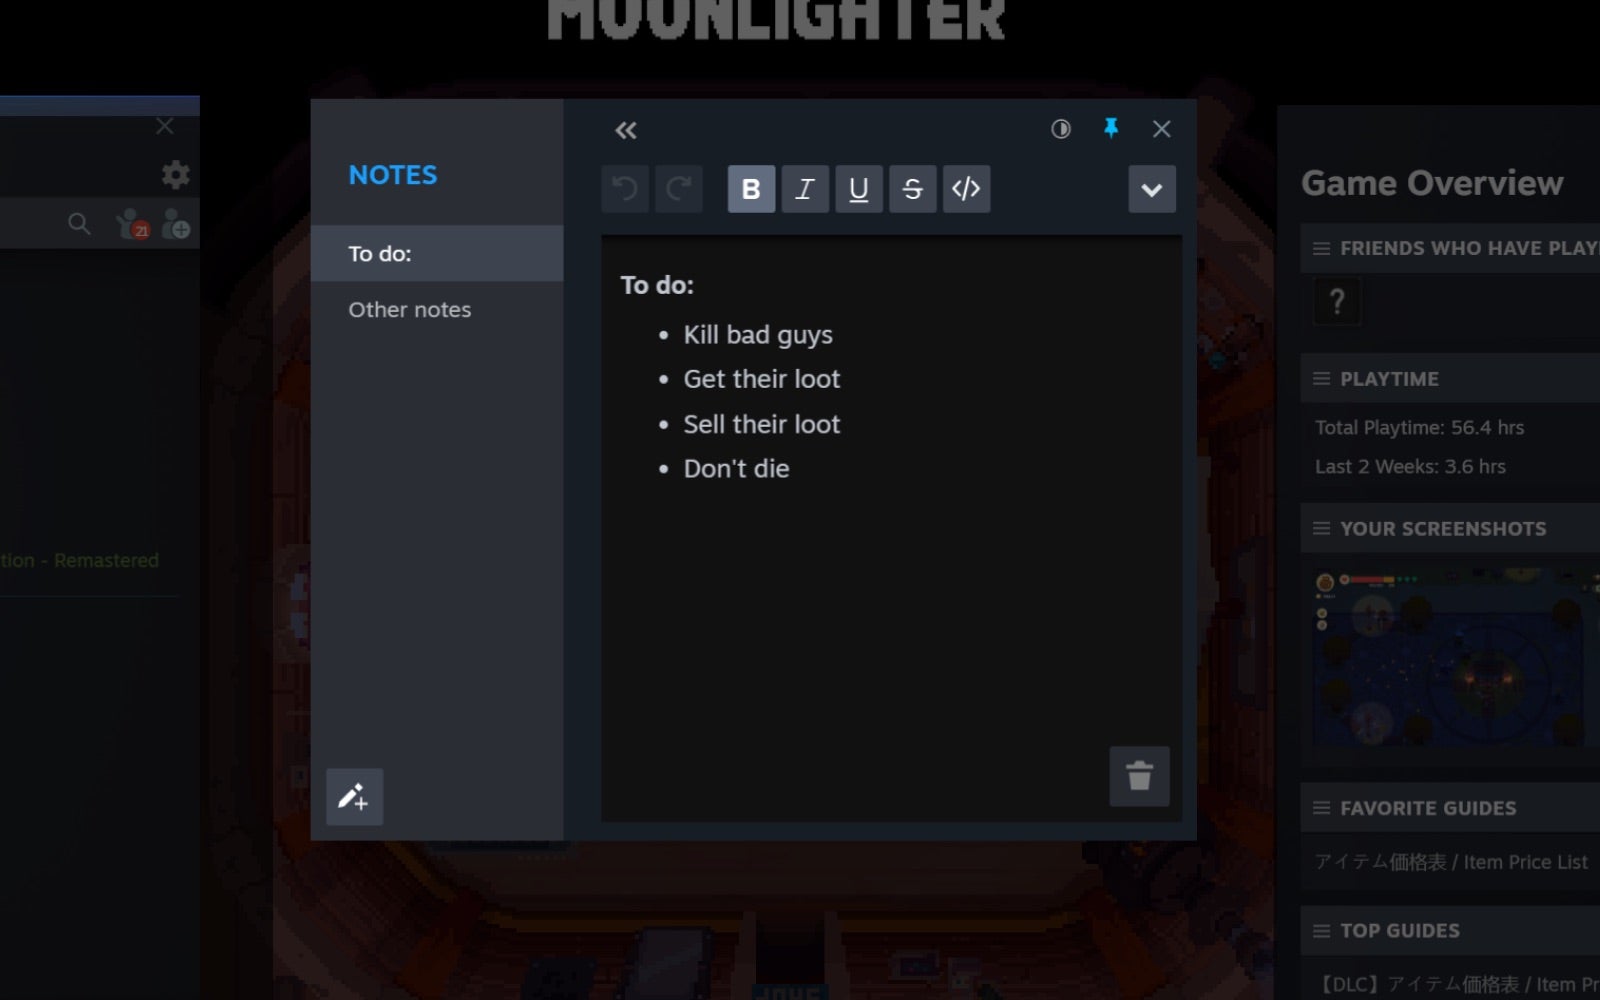 L'application Steam Notes s'affiche avec un menu qui inclut de tuer des méchants, d'obtenir leur butin, de vendre leur butin et de ne pas mourir.